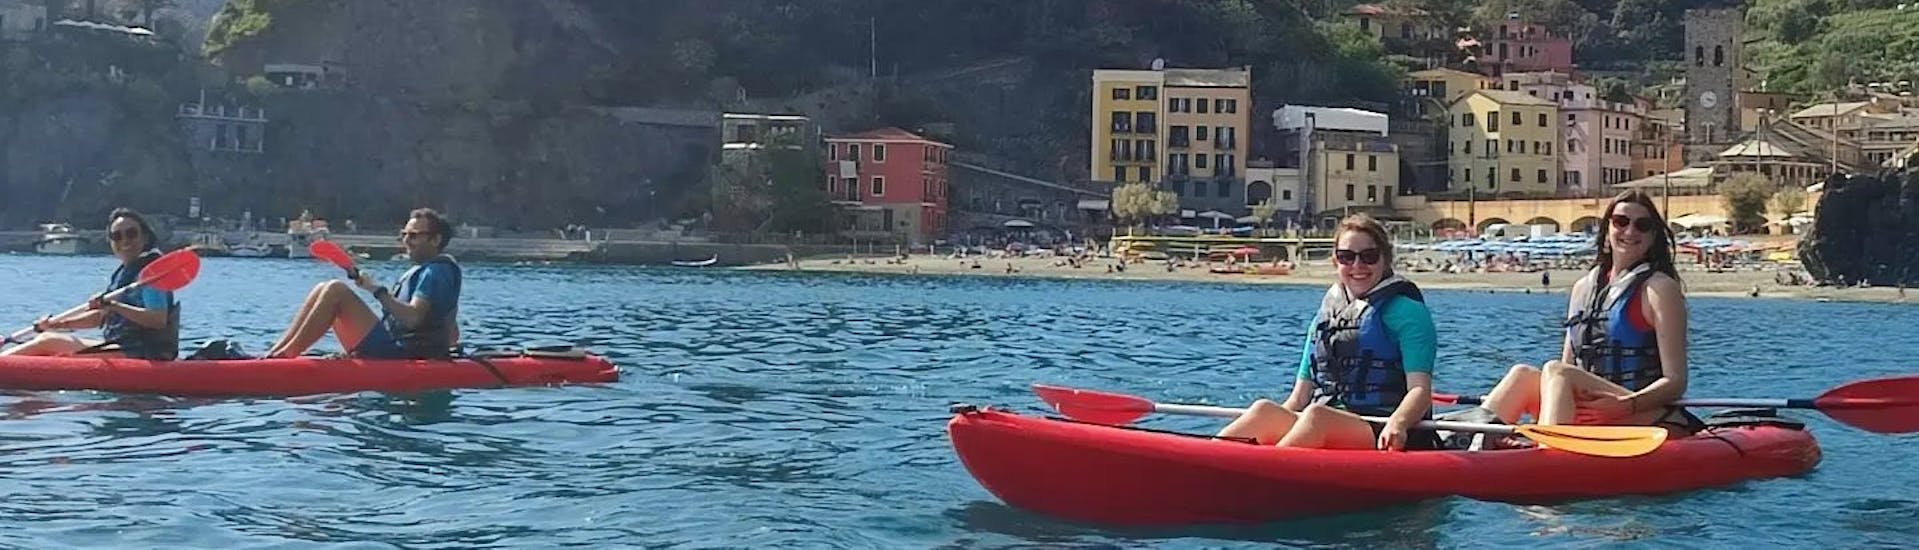 Leichte Kayak & Kanu-Tour in Monterosso al Mare - Monterosso al Mare.